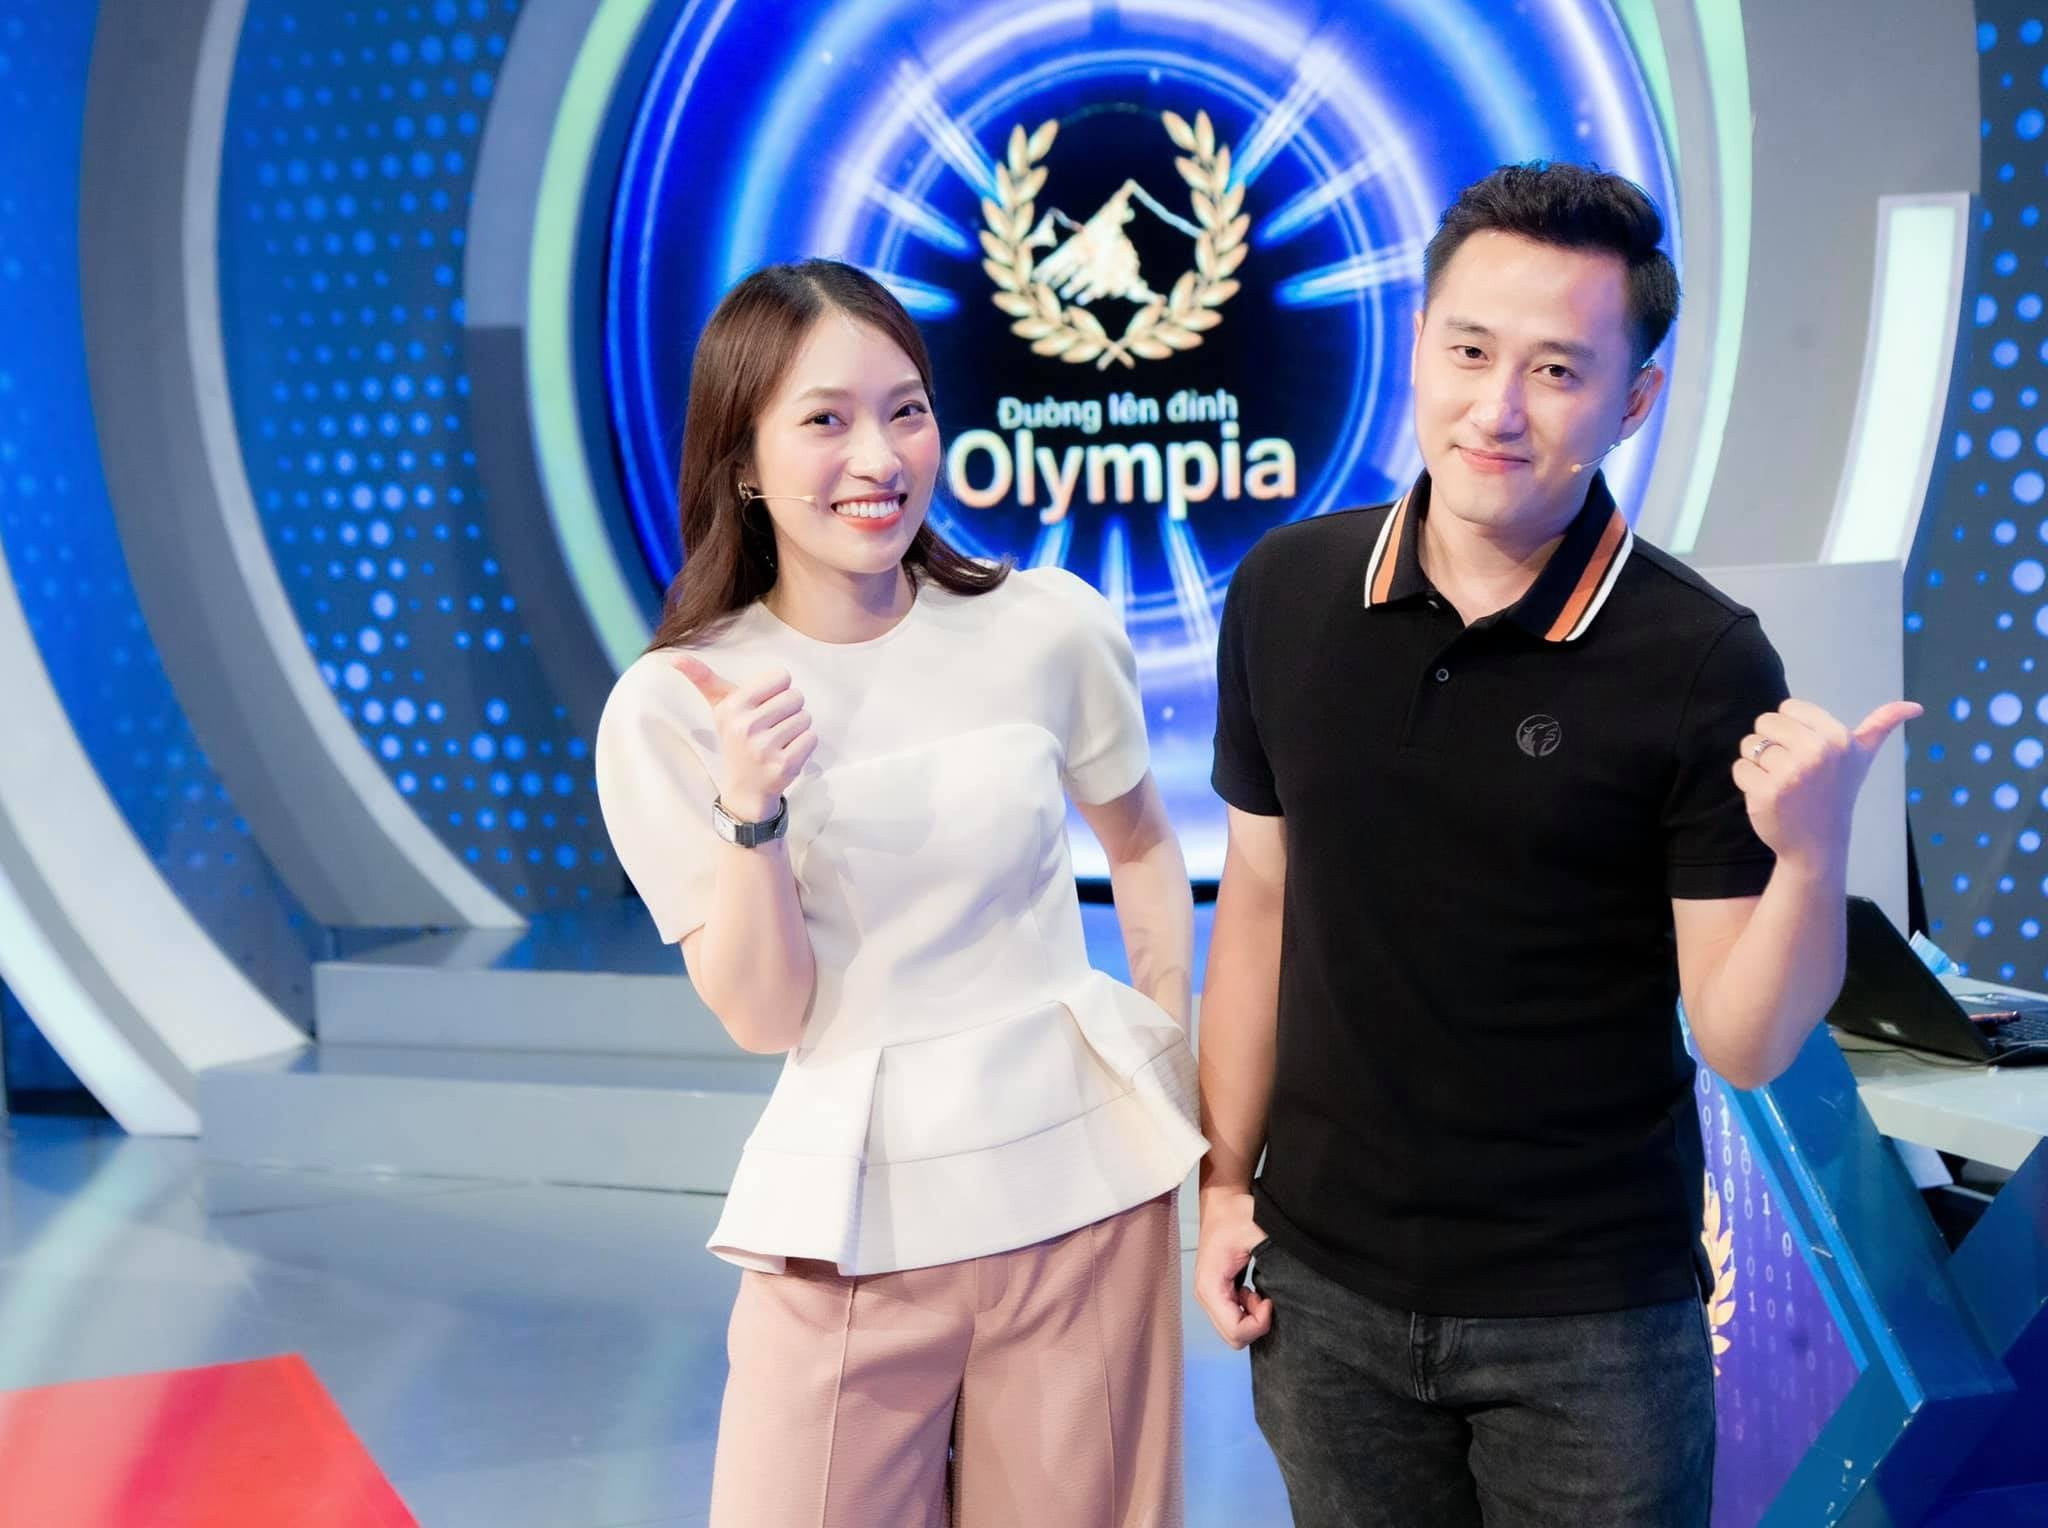 Khánh Vy gây chú ý khi đảm nhận vai trò MC Đường lên đỉnh Olympia  FANPAGE ĐƯỜNG LÊN ĐỈNH OLYMPIA